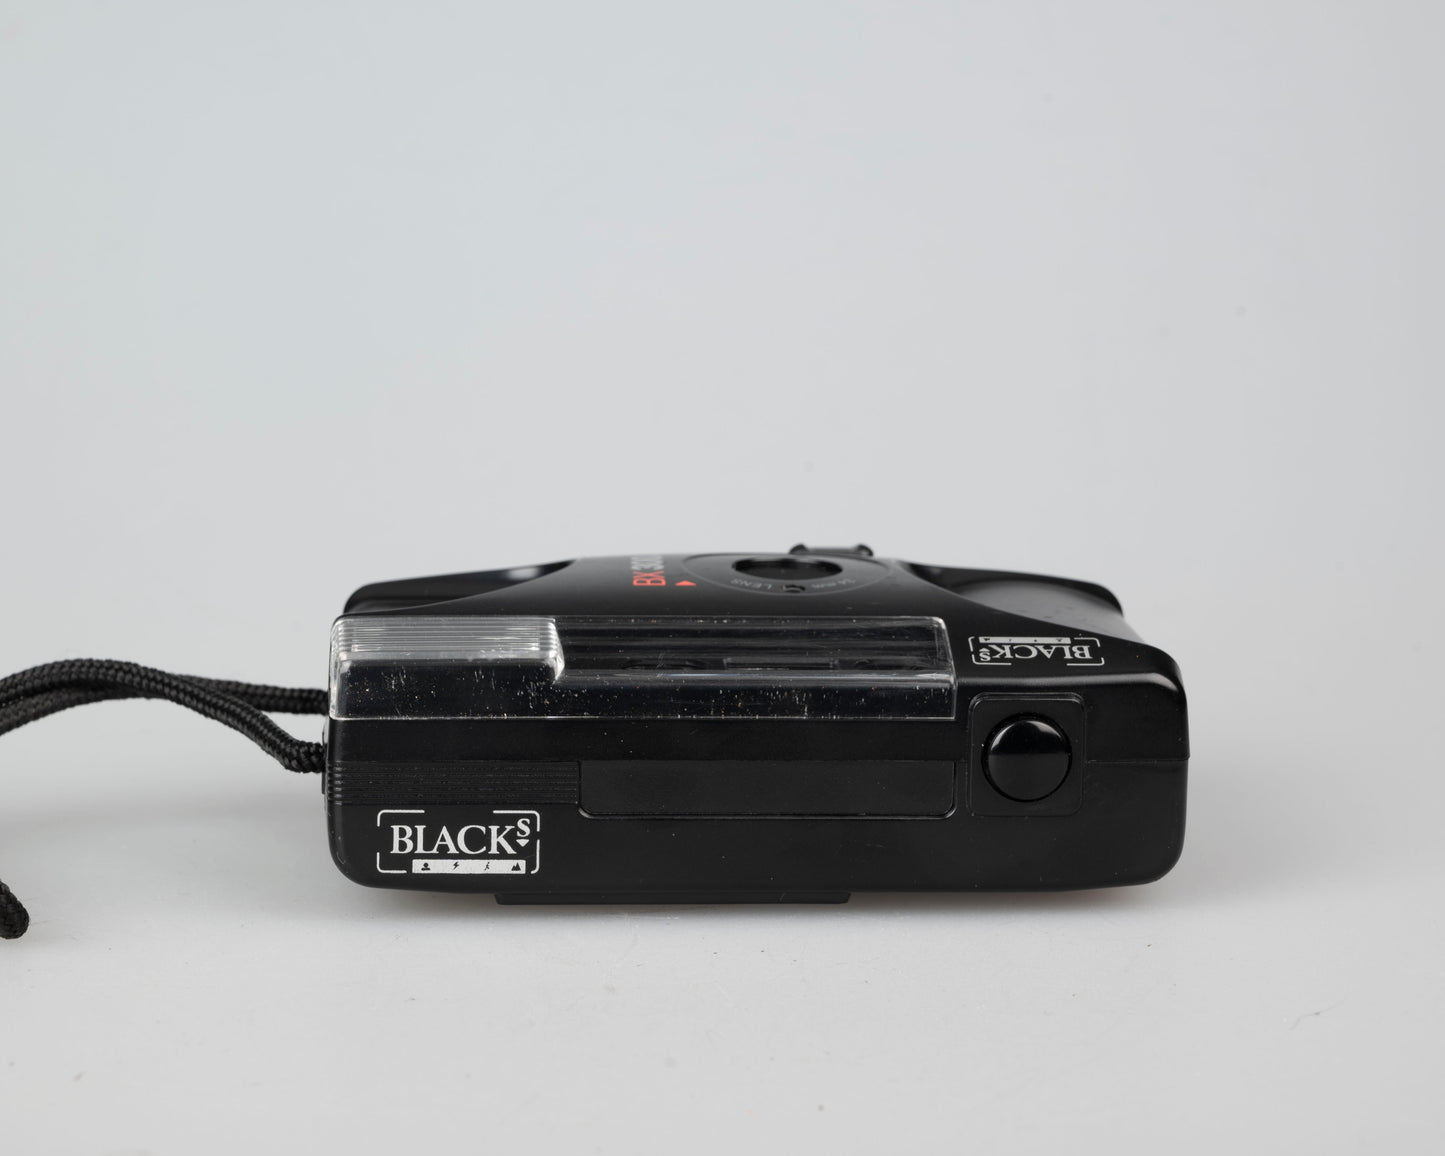 Black's BX 300 AF autofocus 35mm camera